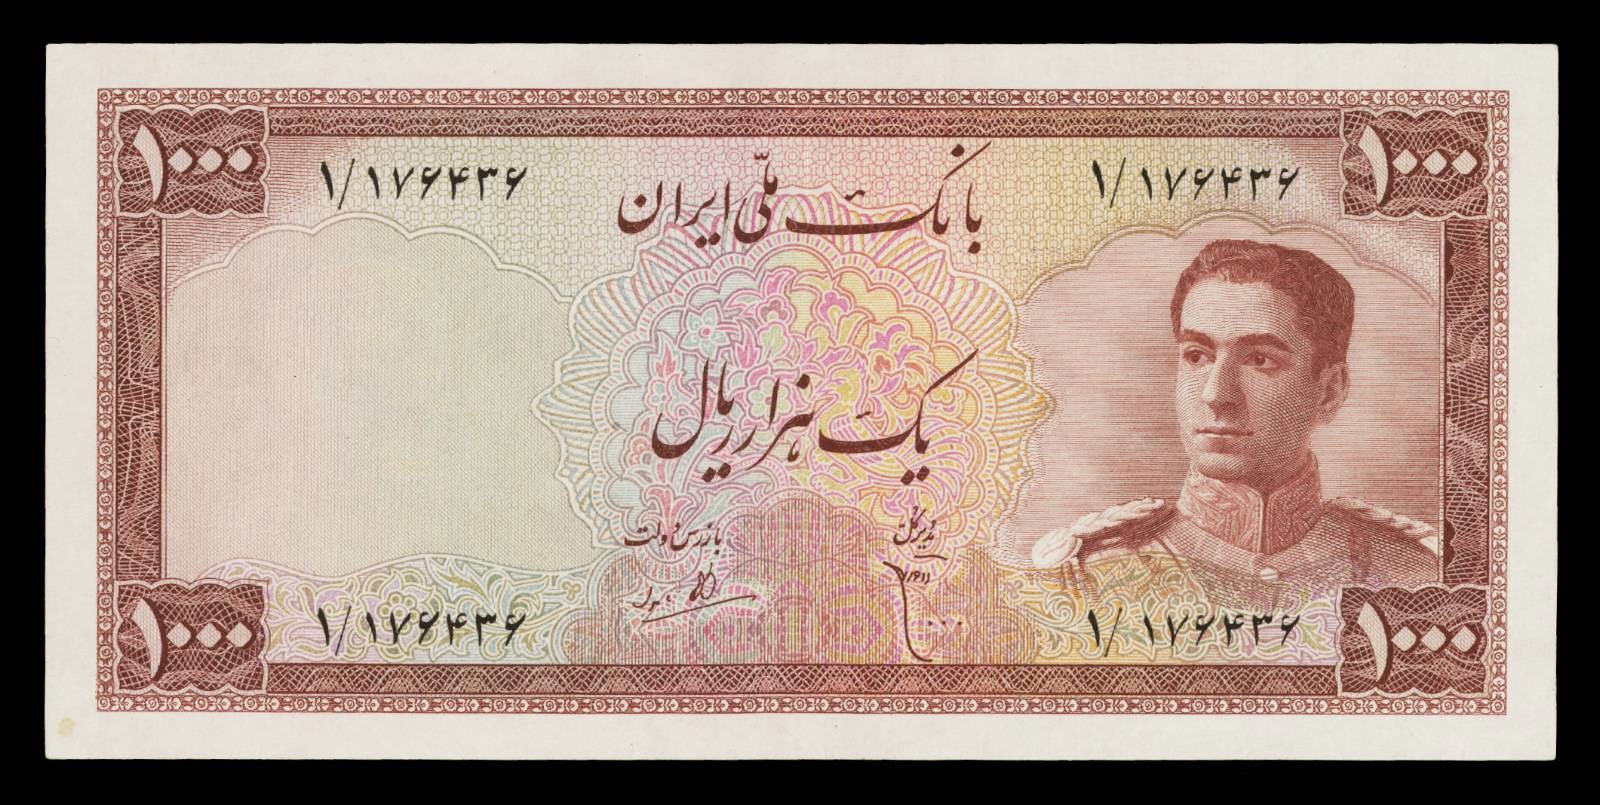 Iran 1000 Rials note 1951 Mohammad Reza Shah Pahlavi